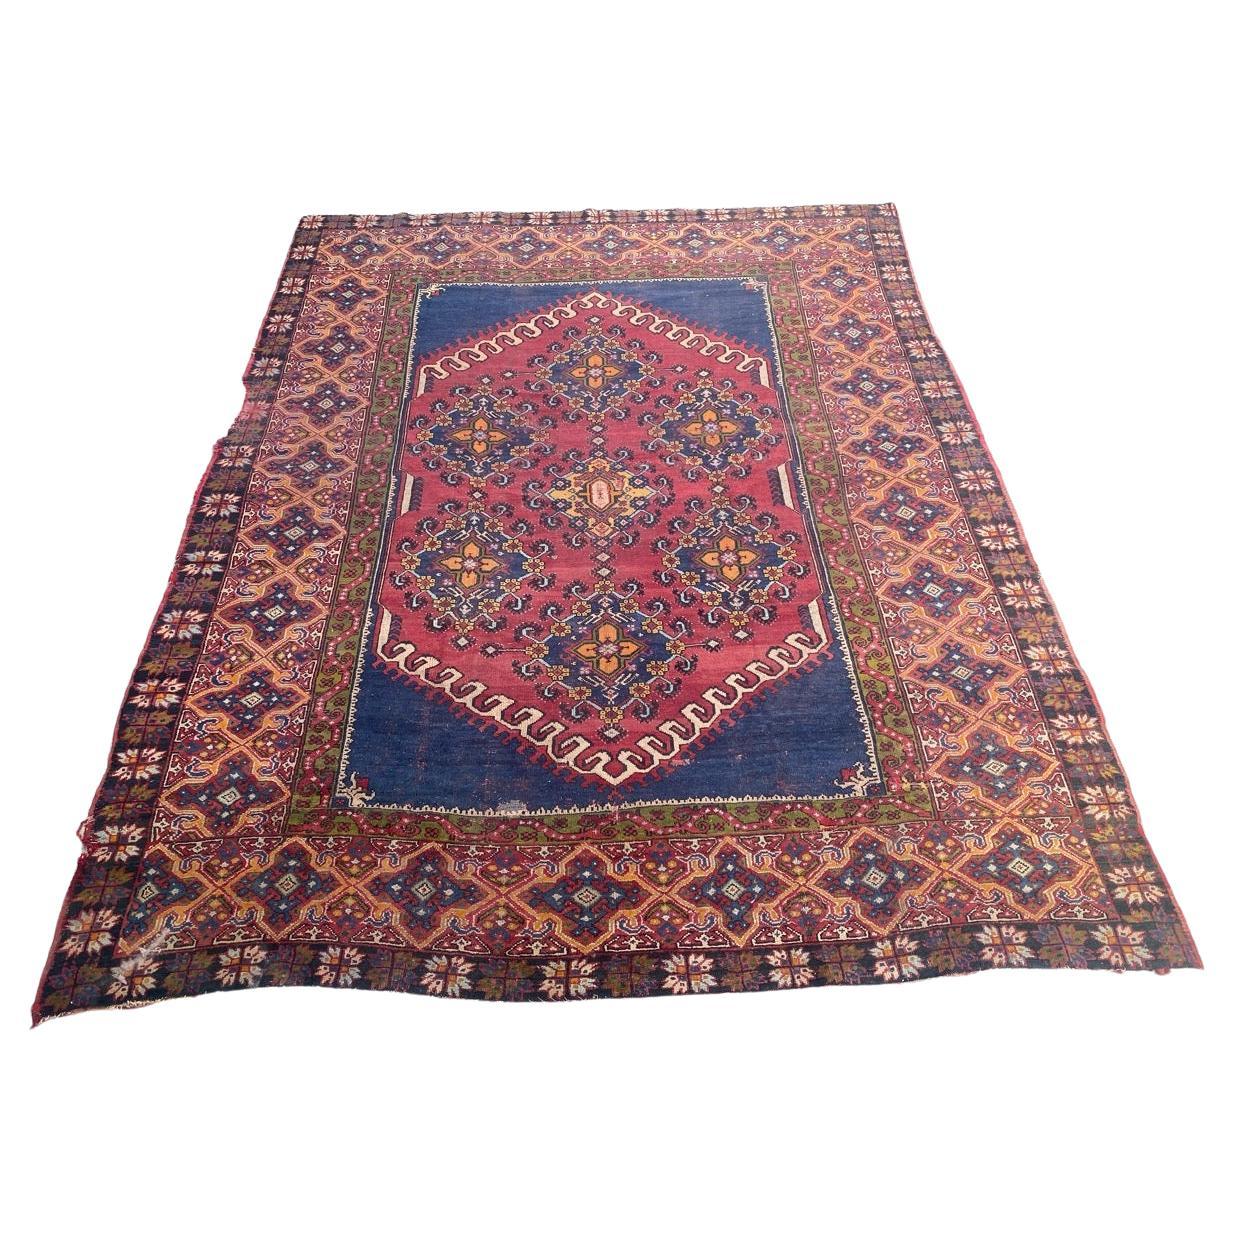 Bobyrug's schöner großer antiker marokkanischer Teppich